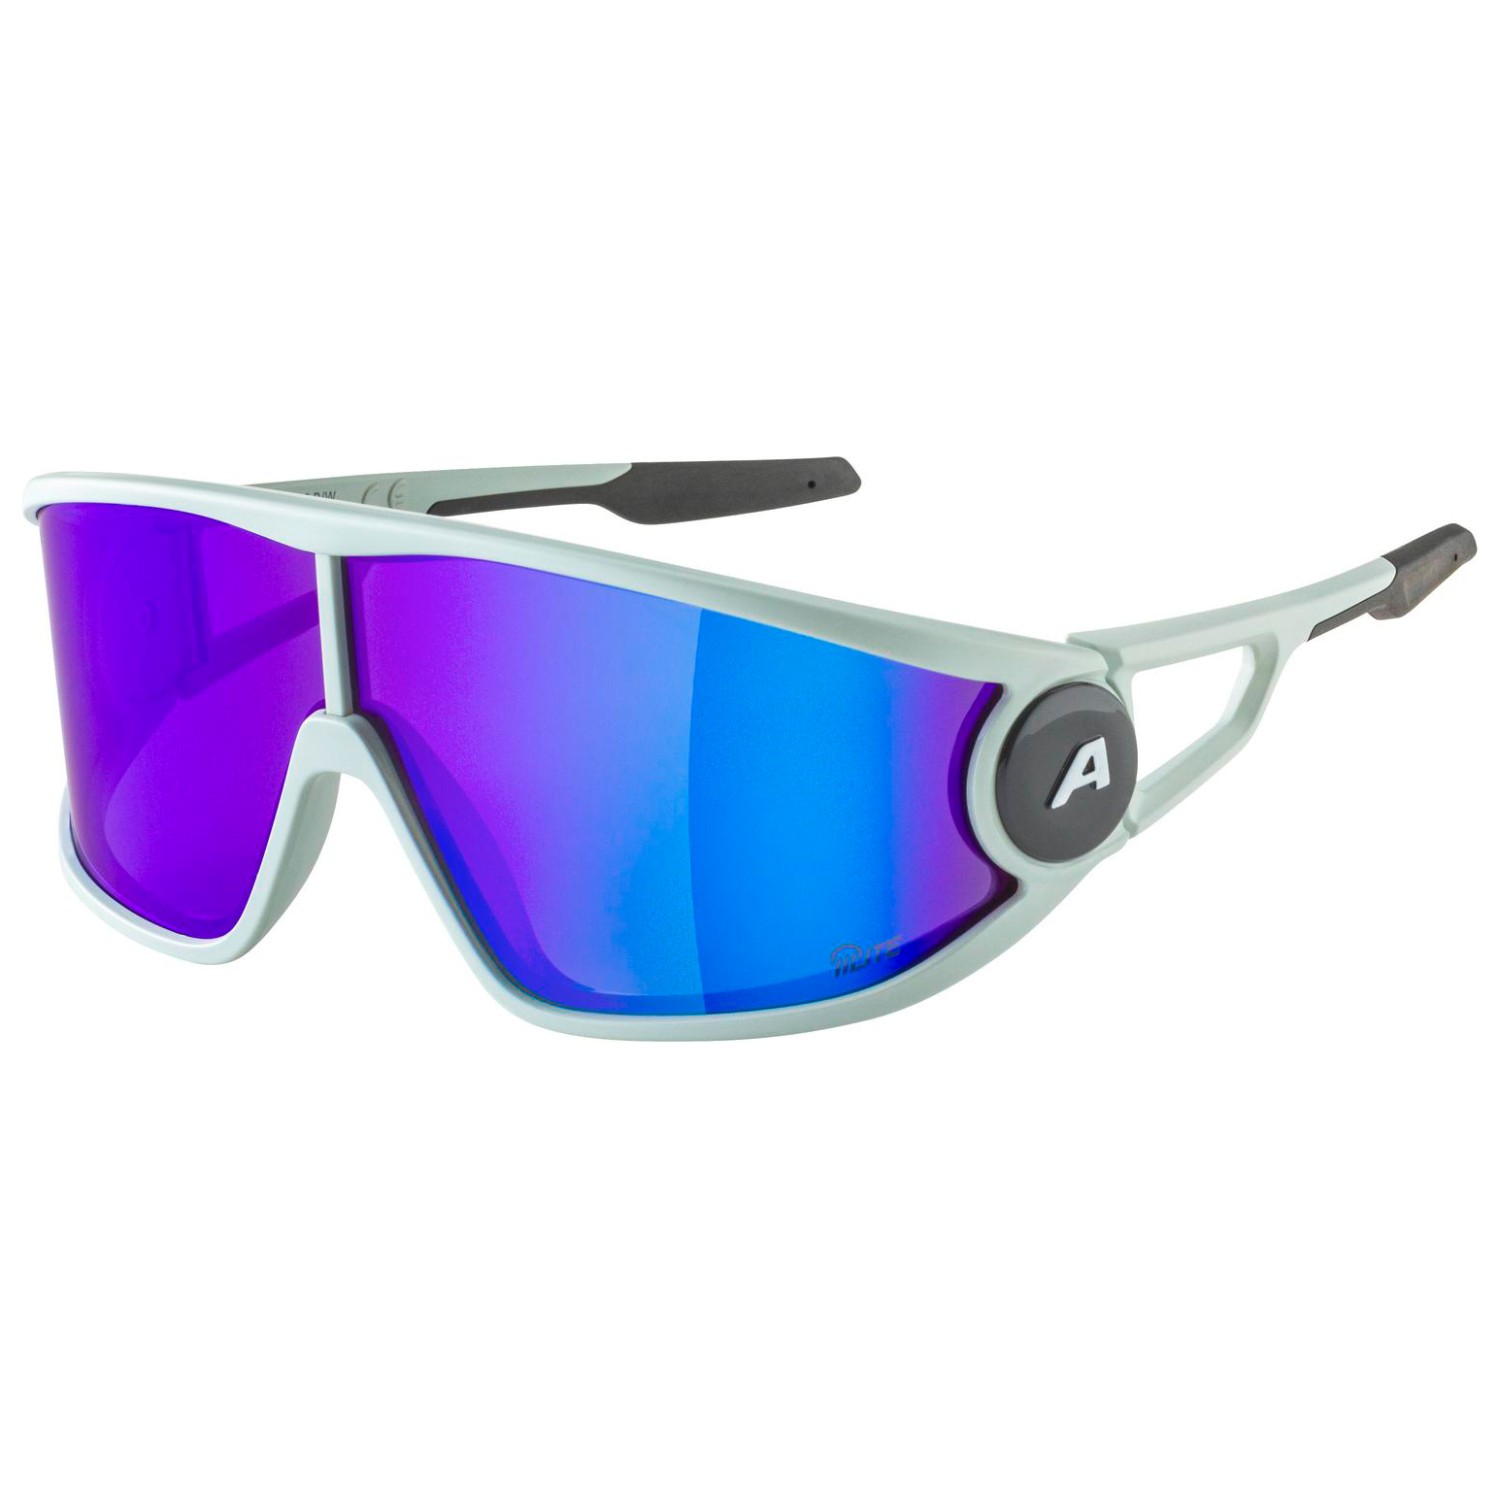 Солнцезащитные очки Alpina Legend Q Lite Cat 3, цвет Smoke/Grey Matt очки солнцезащитные alpina luzy белый пурпурный зеркальный a8571310